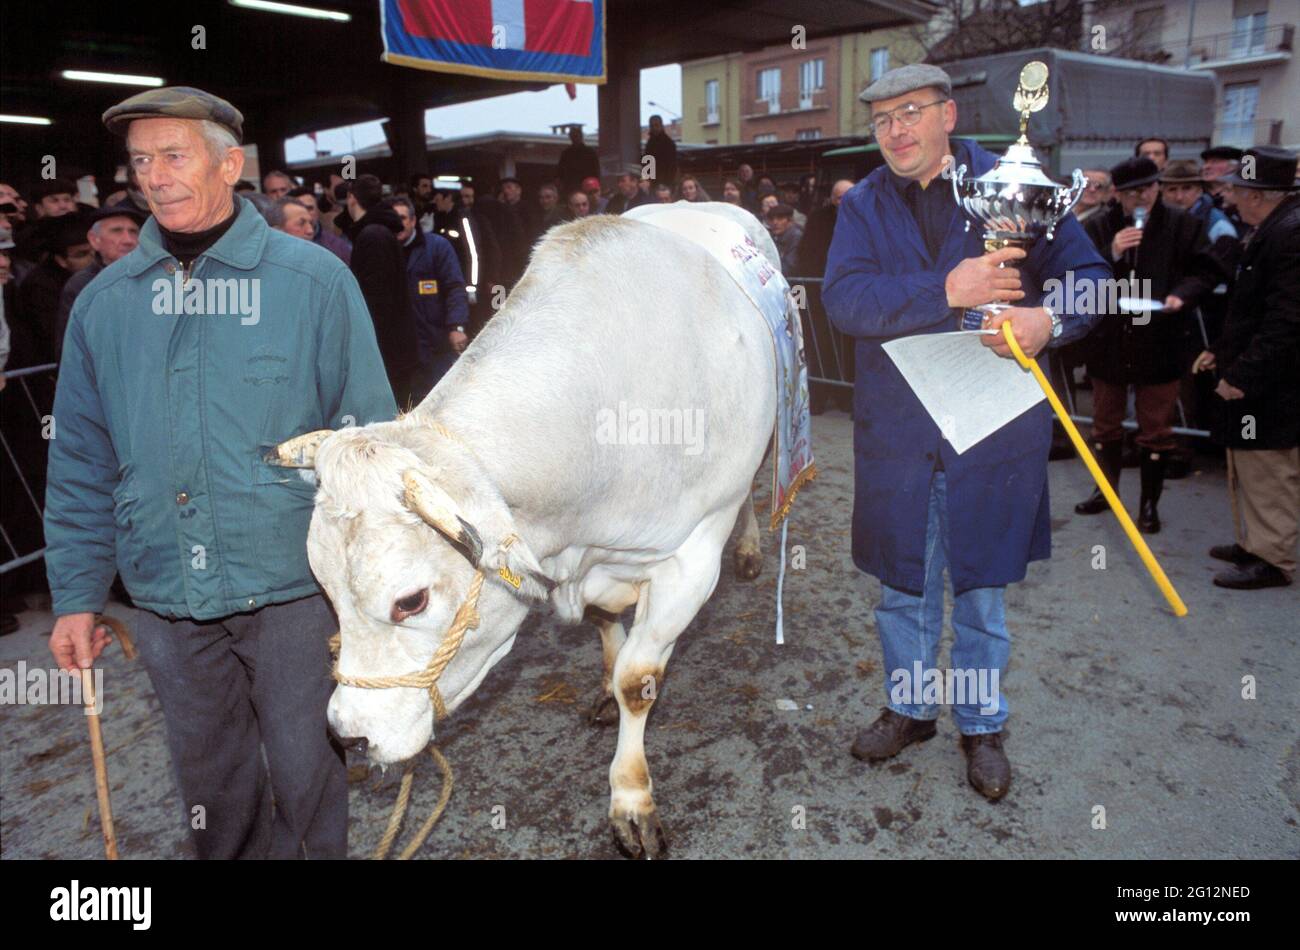 Traditionelles Fest des 'Bue Grasso' (fetter Ochse) in Carrù (Cuneo, Piemont, Italien), Jahrmarkt der 'weißen piemontesischen' Rasse Vieh, eines der ältesten in Italien Stockfoto